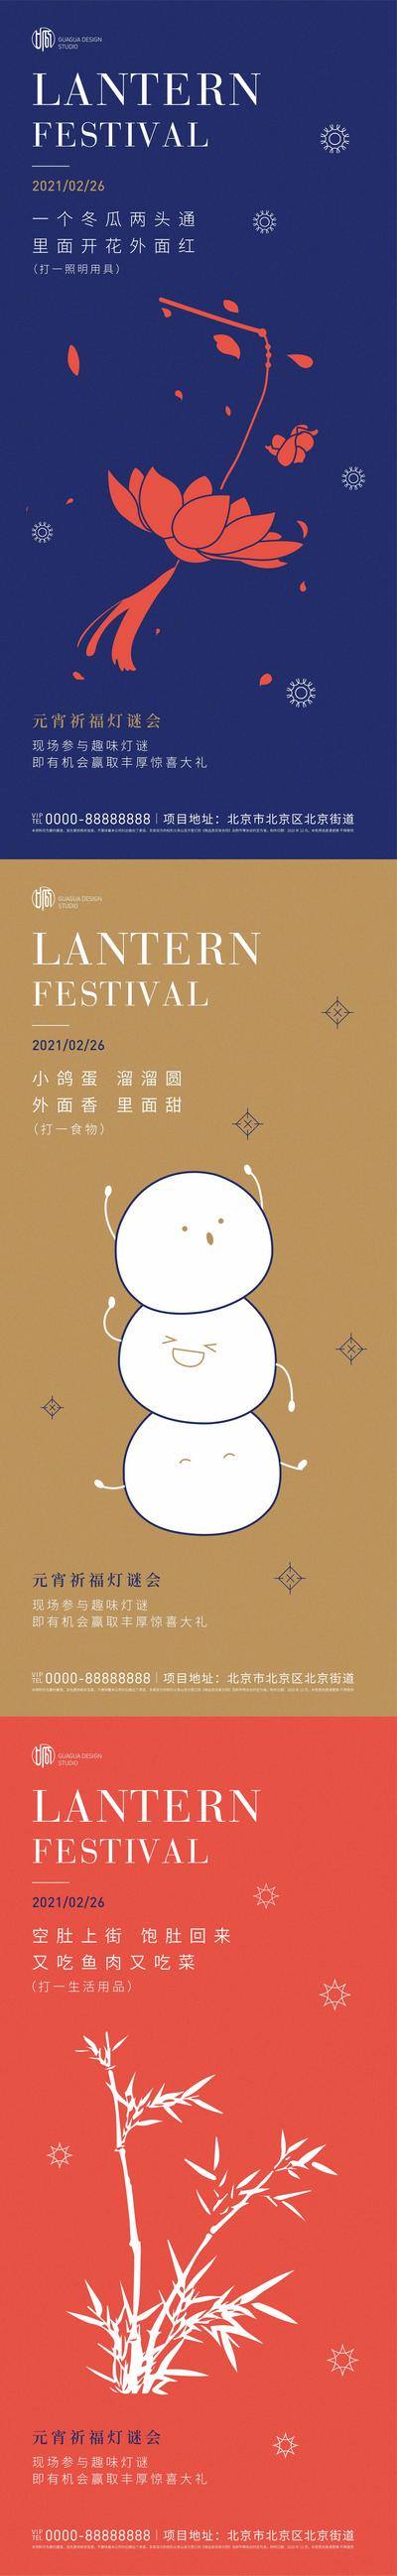 南门网 海报 中国传统节日 元宵节 灯谜 谜语 暖场 活动 插画